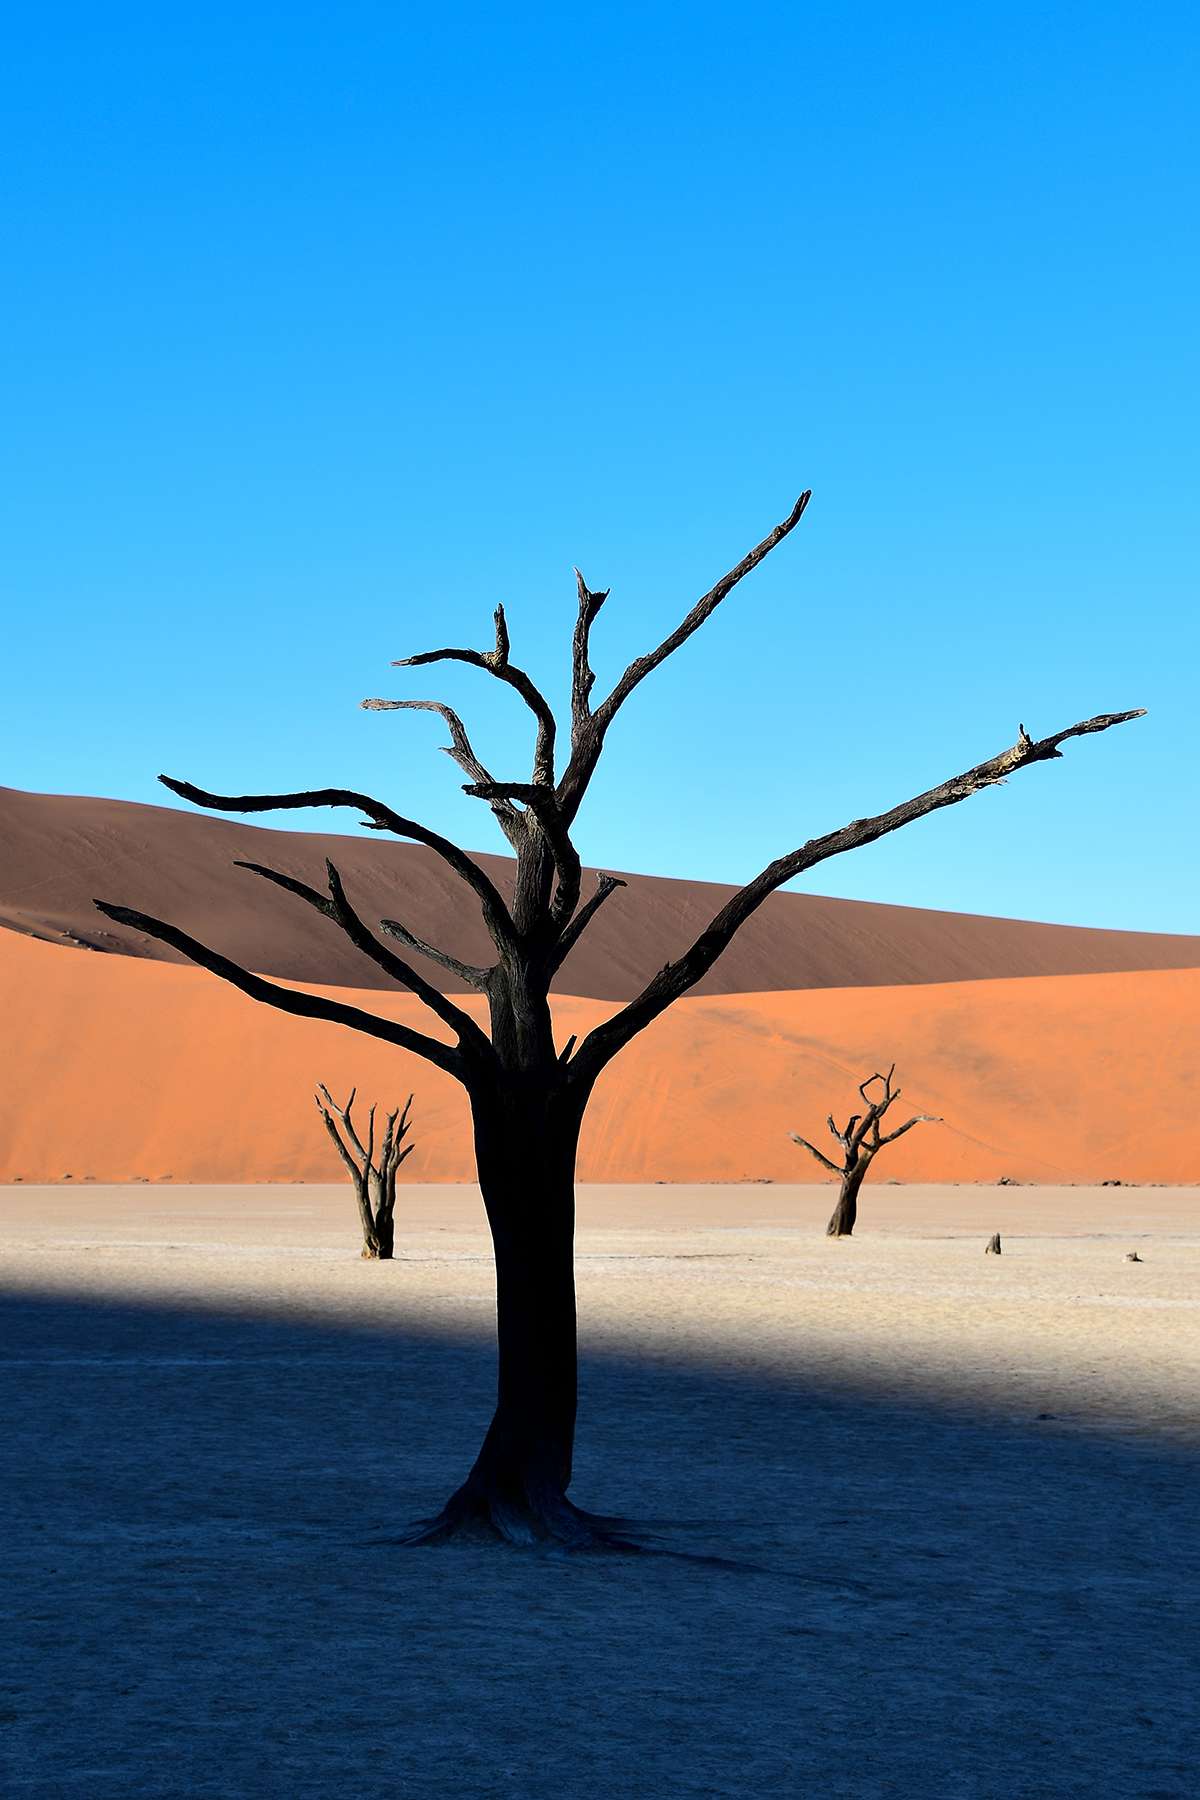 Dead trees in Namibian desert